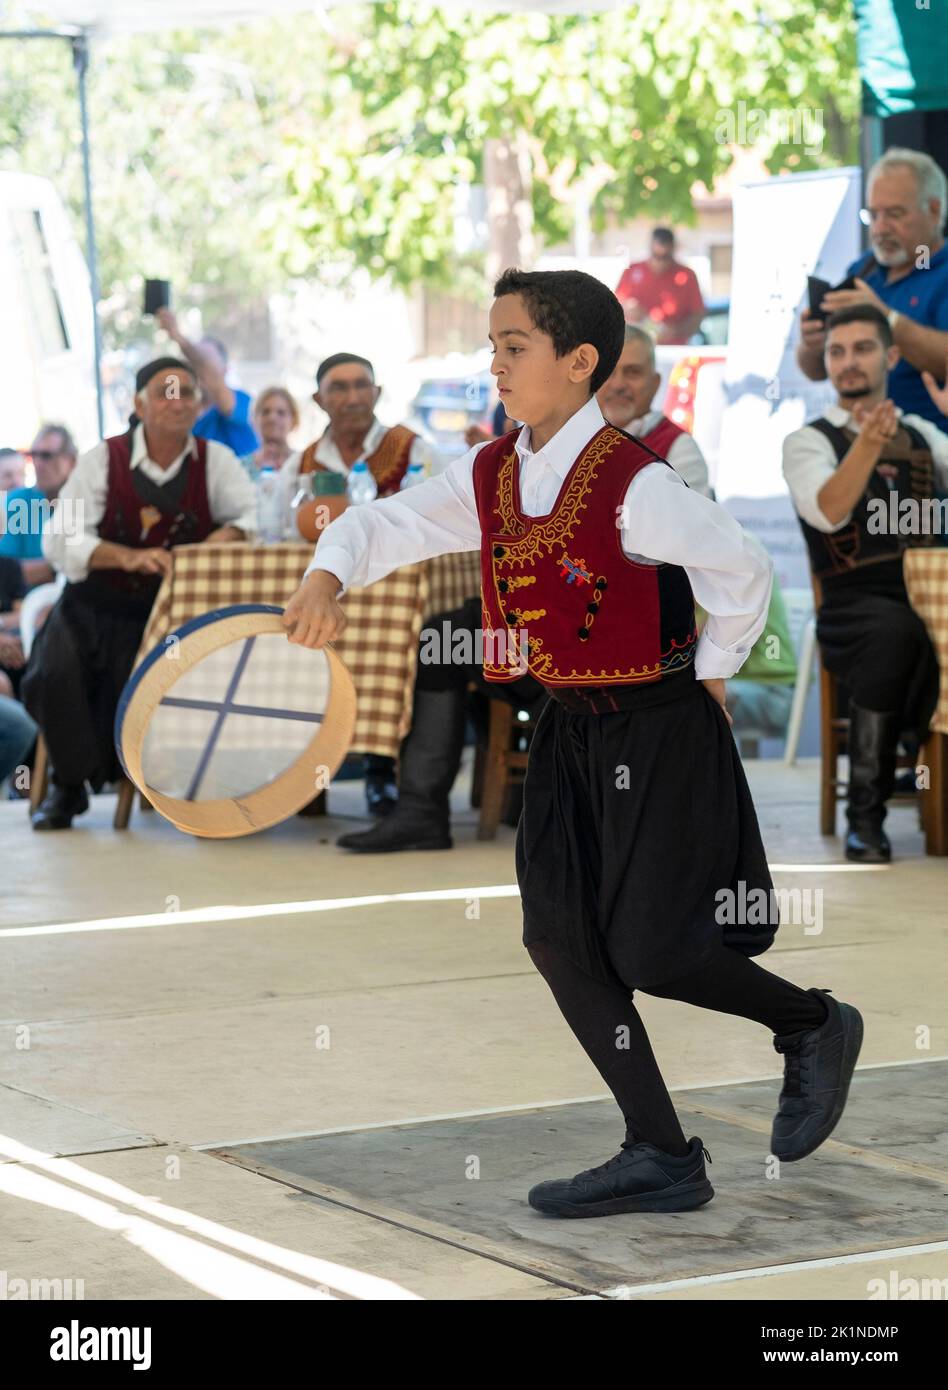 De jeunes danseurs chypriotes se produisent en costumes traditionnels au festival rural Statos-Agios Fotios, dans la région de Paphos, à Chypre. Banque D'Images